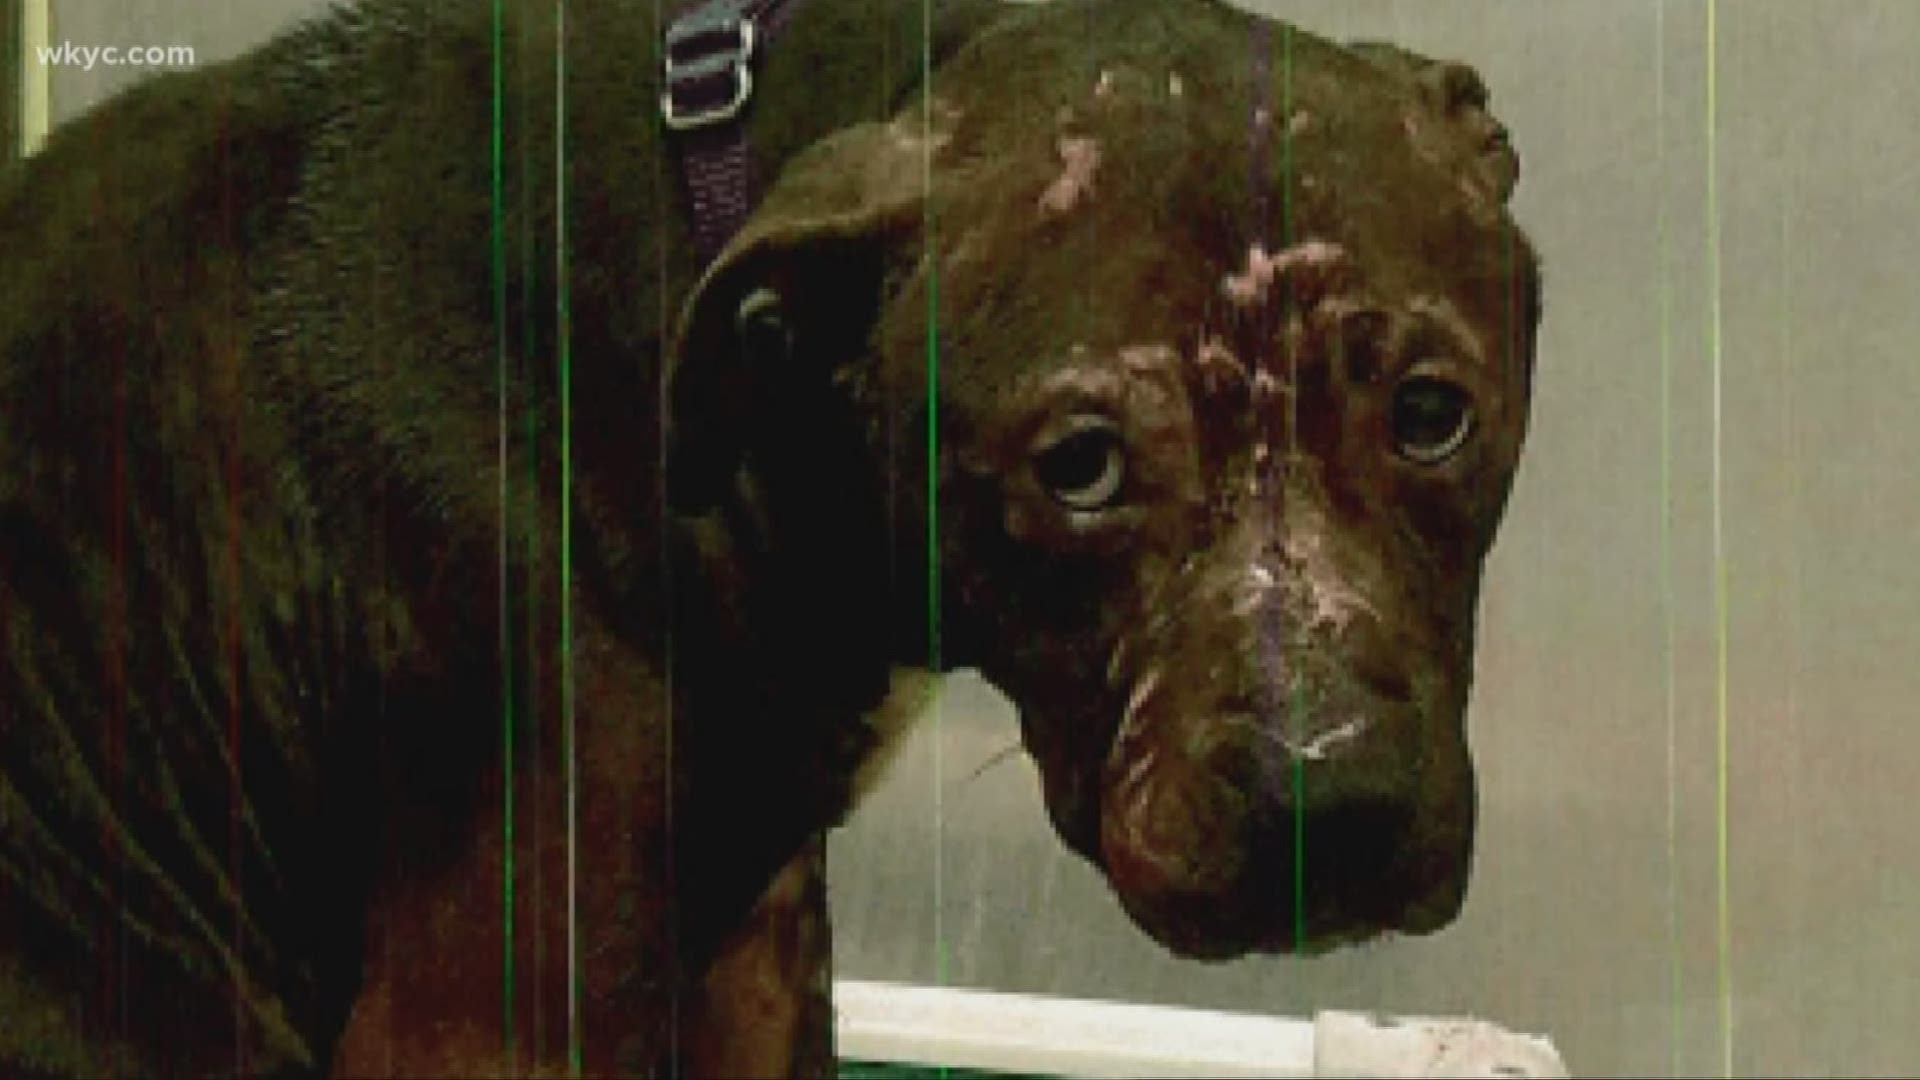 The Investigator: Dog fighting called underground bloodsport